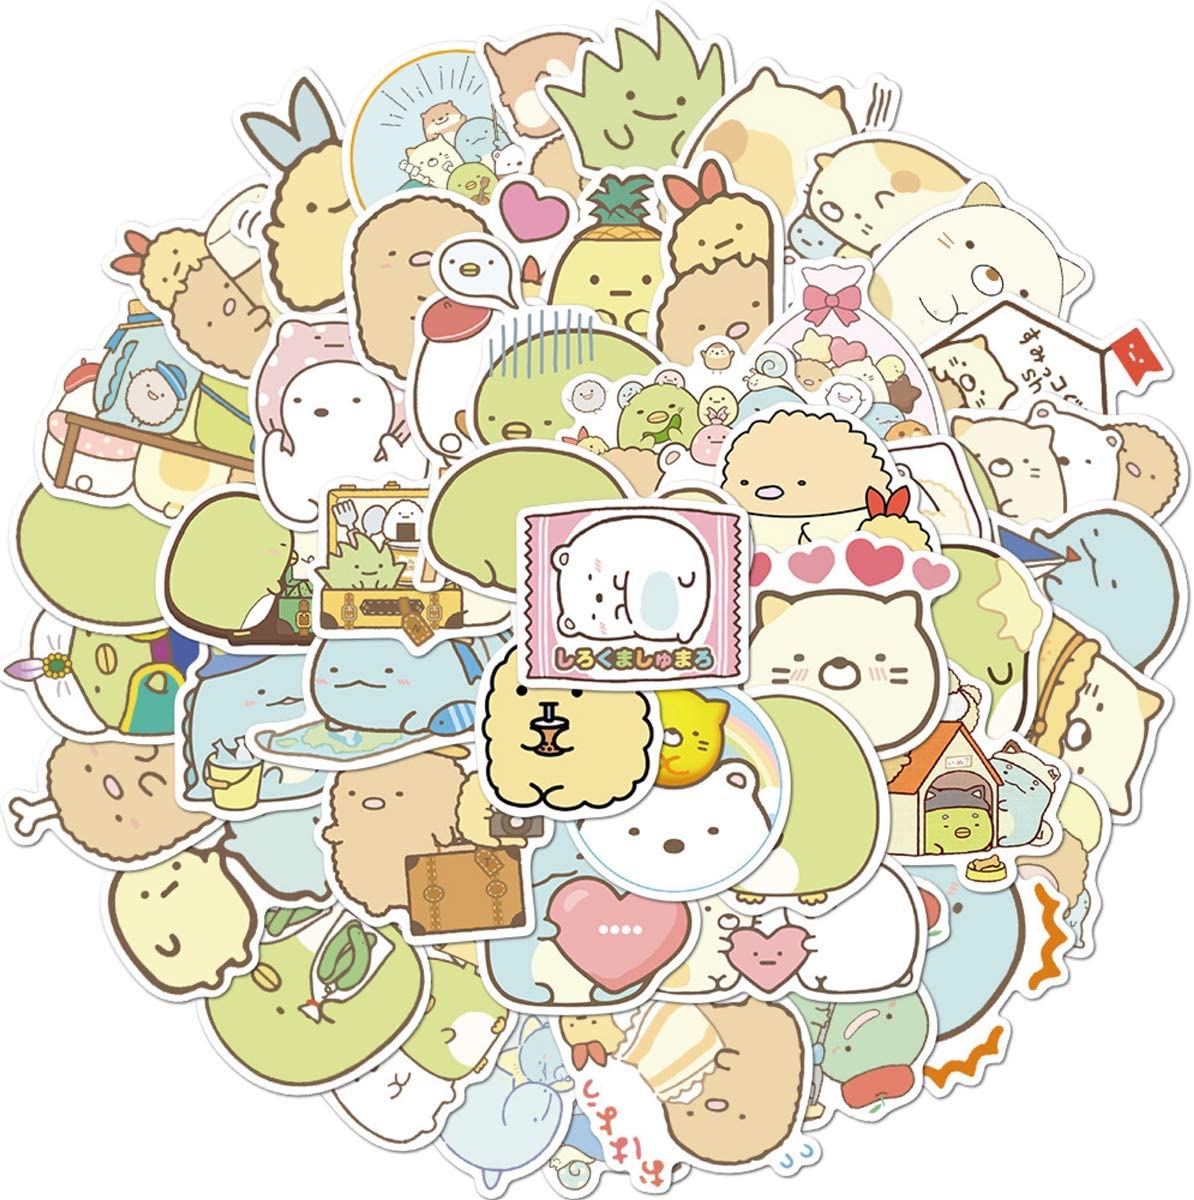 SVGDHZK 50 Pcs Kawaii Sumikkogurashi Cartoon Stickers Japanese Anime Laptop Stickers for Kids Girls Teens Water Bottles Luggage Decal, Toys & Games